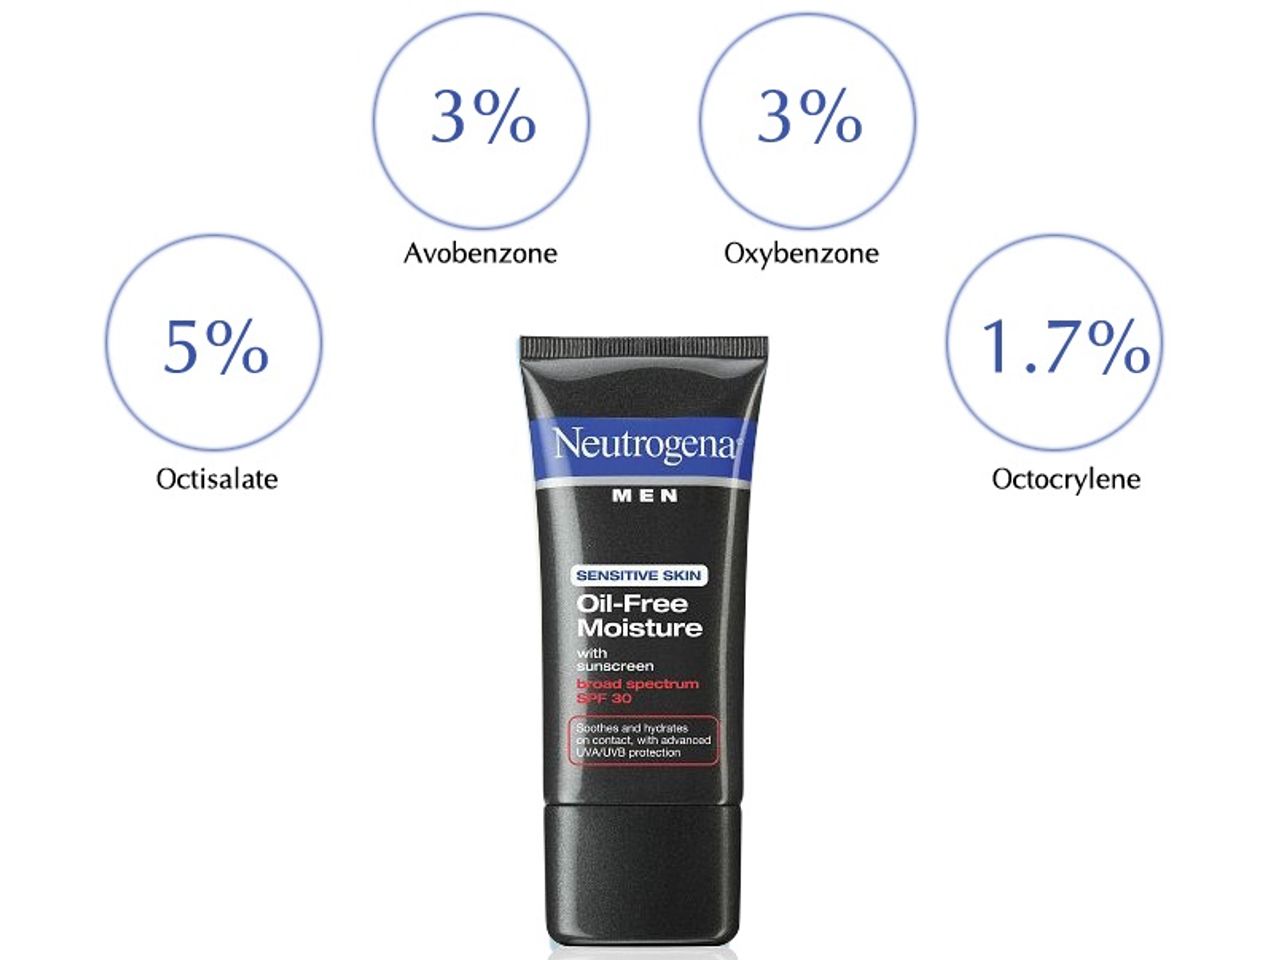 Neutrogena Men Sensitive Skin Oil Free Moisture SPF30 gồm các thành phần hoạt tính và không hoạt tính